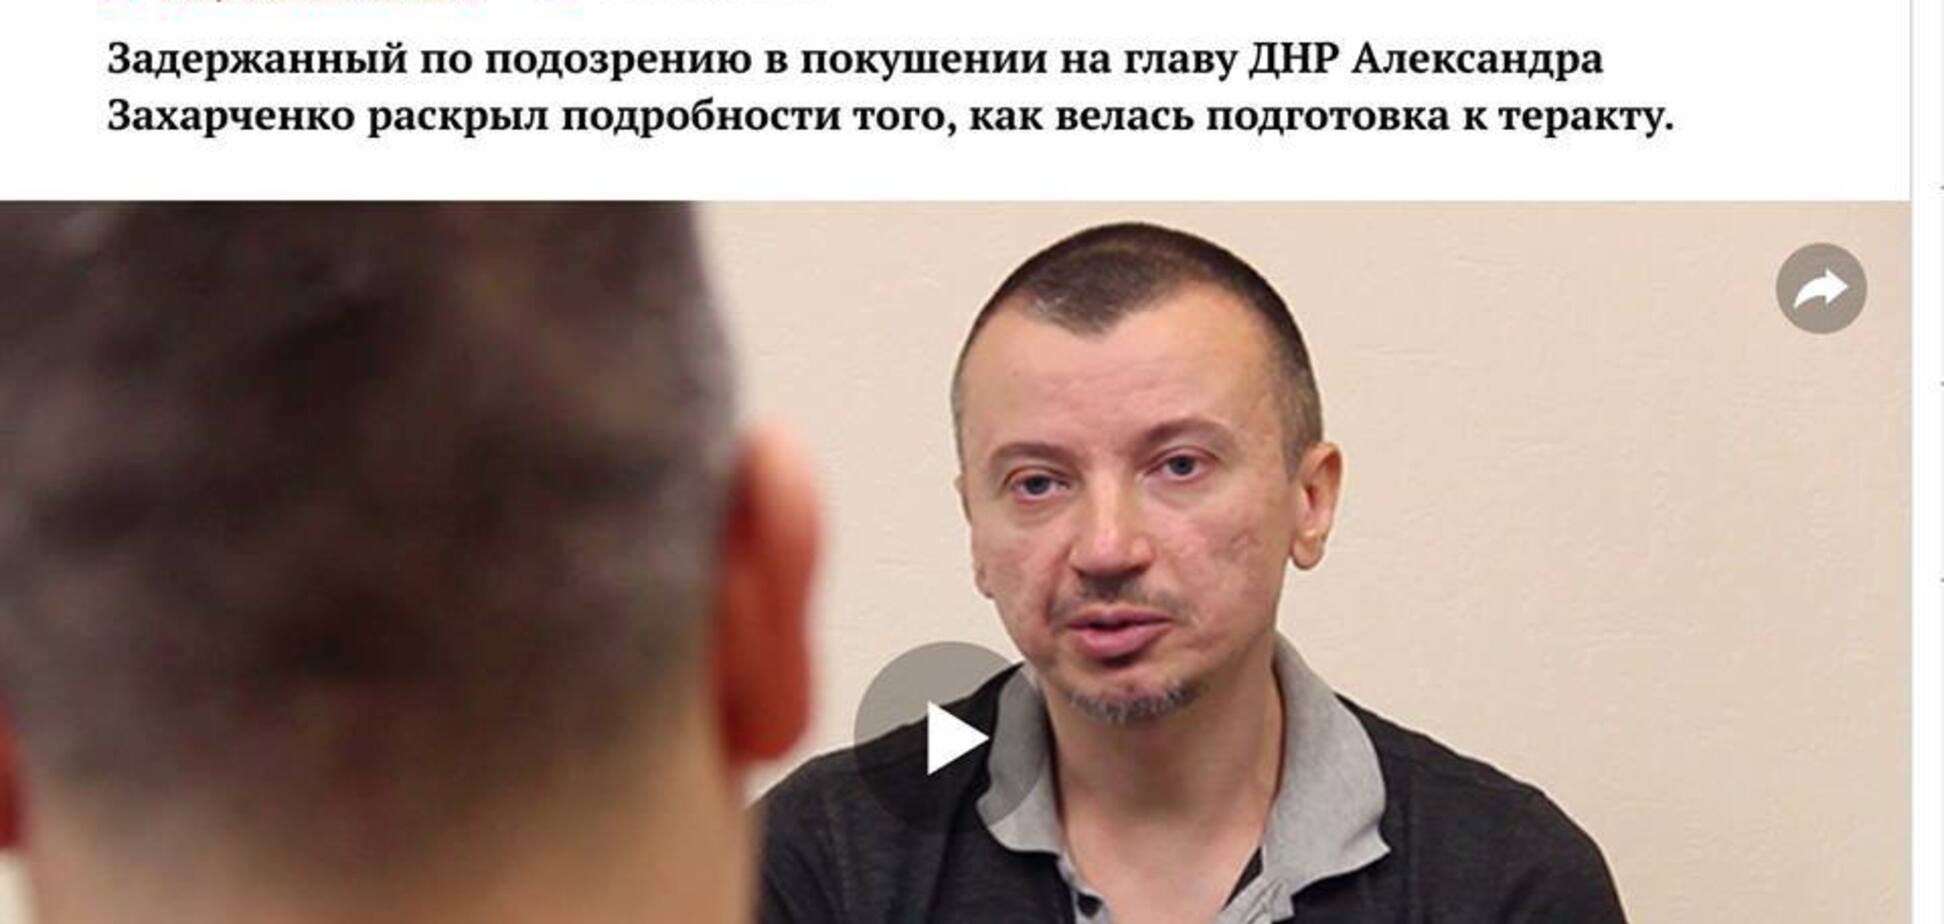 Сенсация! В ''ДНР'' поймали агента СБУ, который организовал покушение на Захарченко